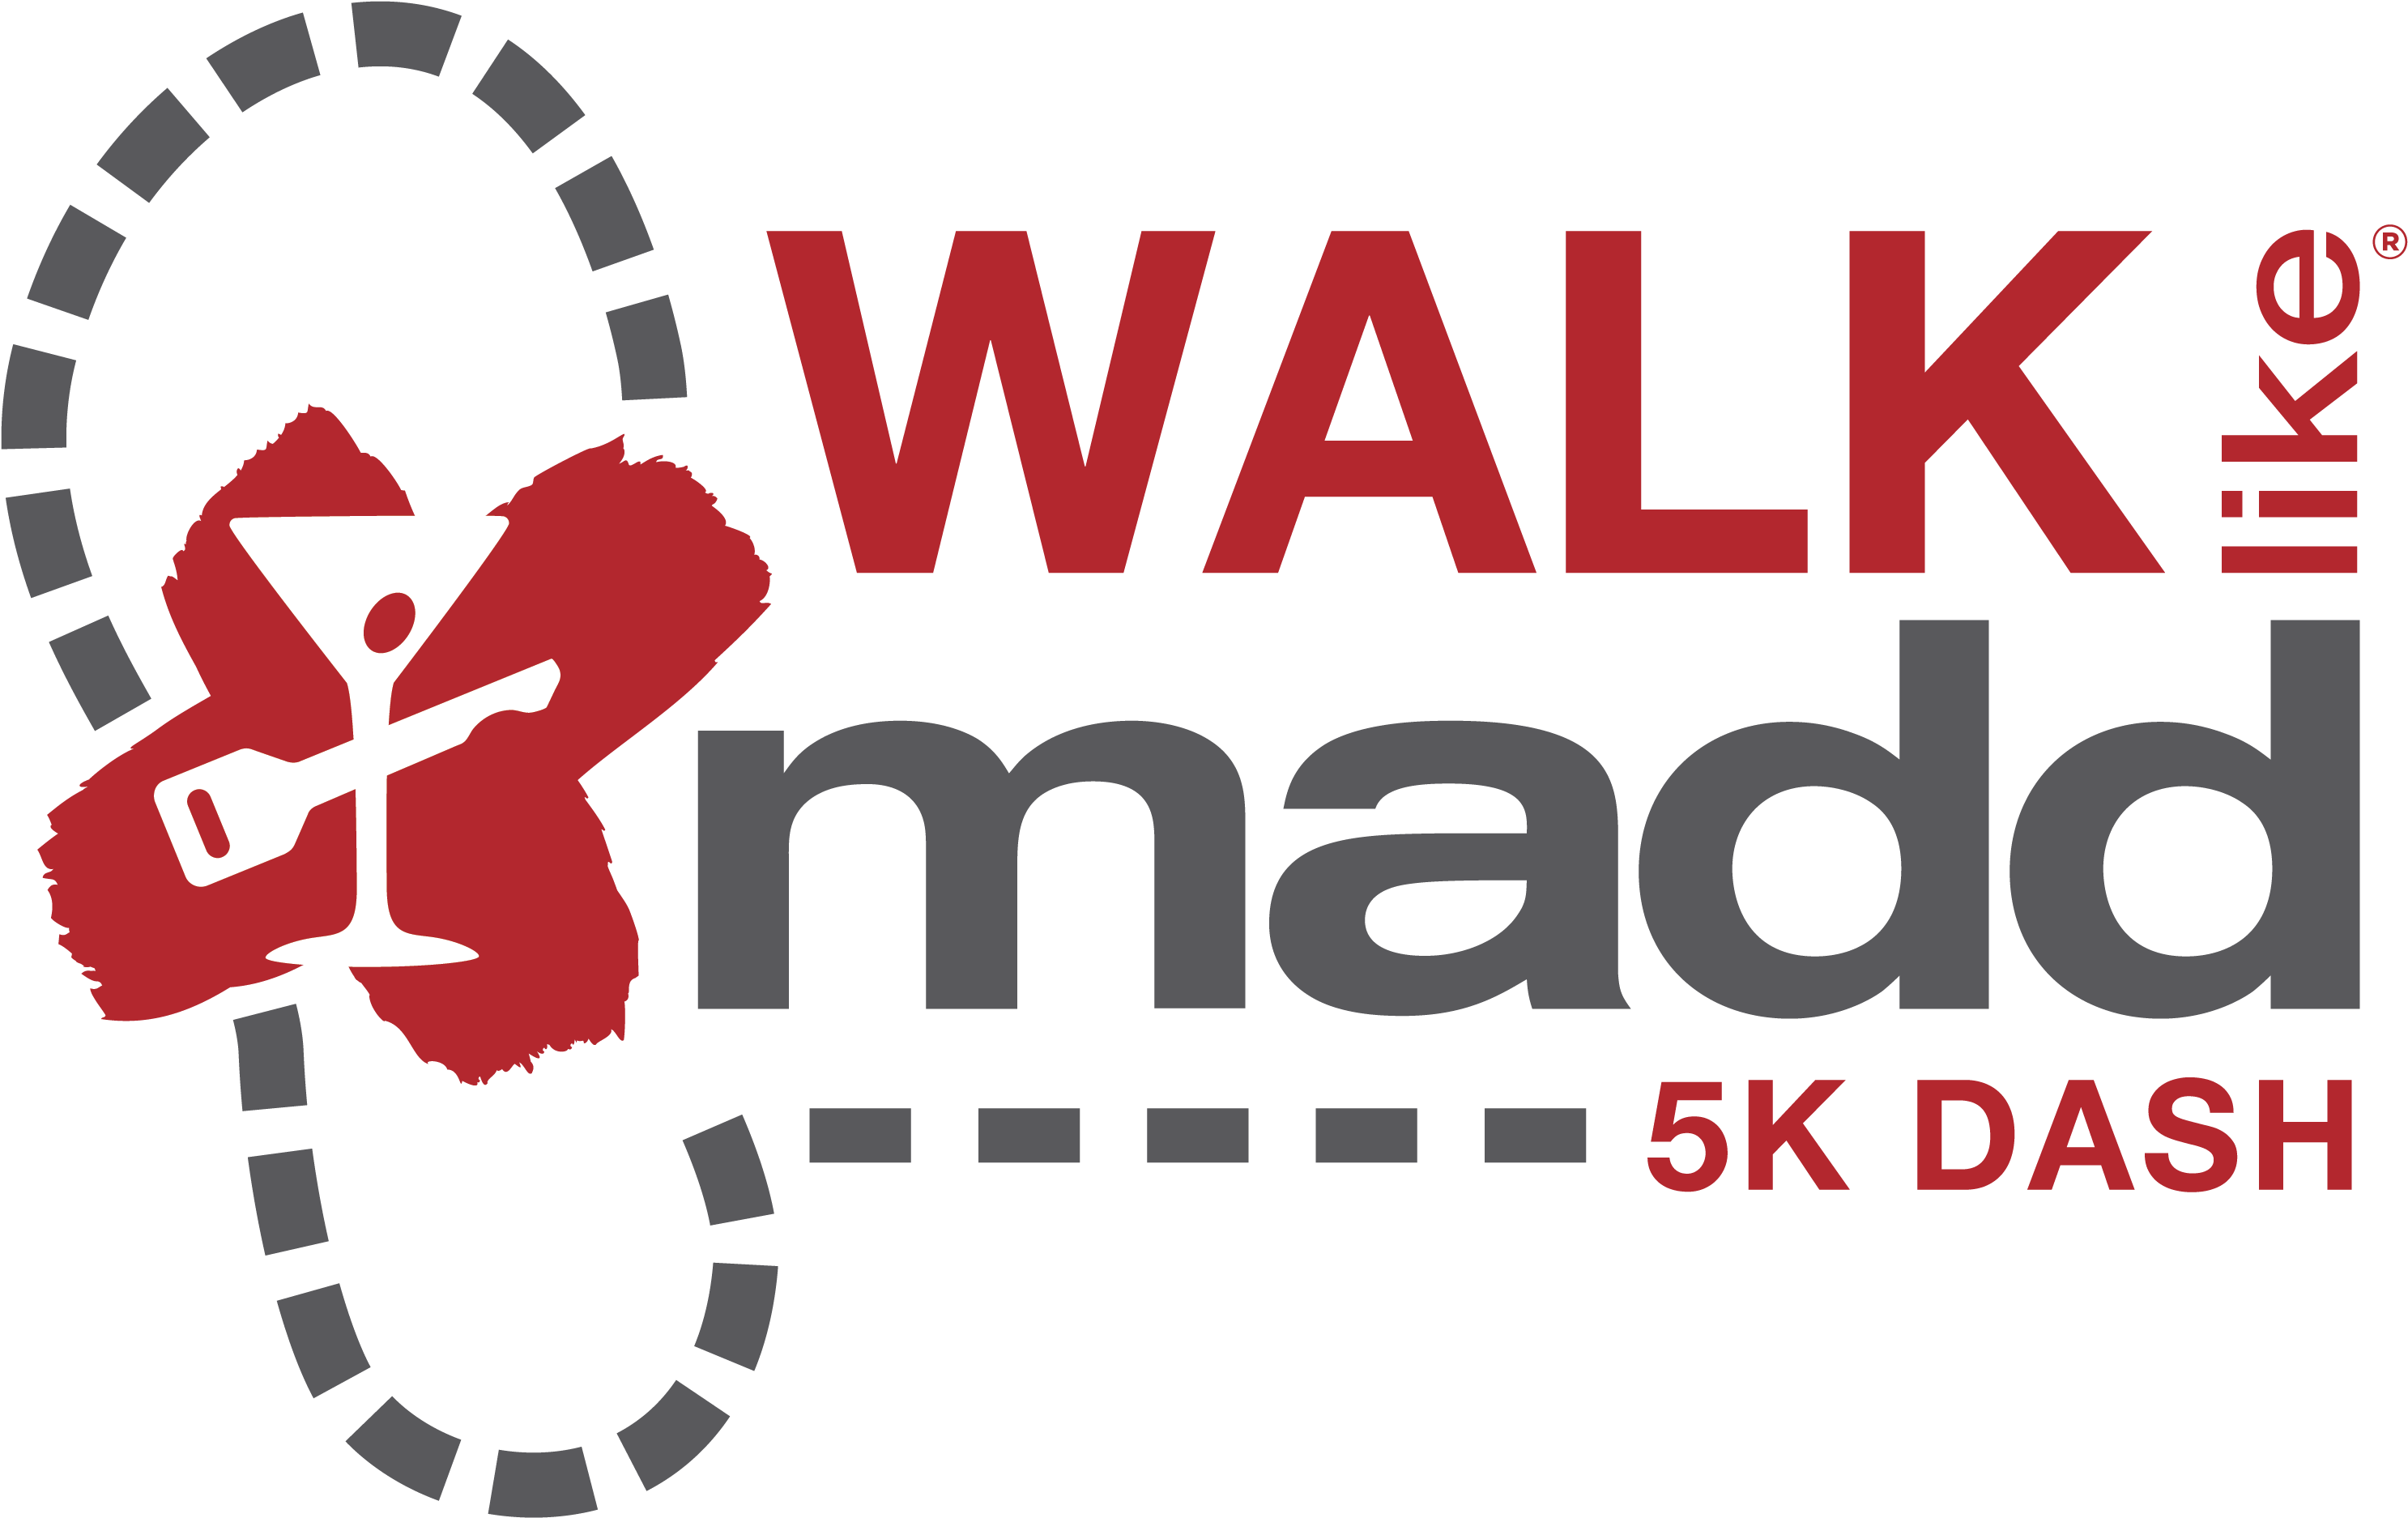 Tucson 5k Dash & Walk Like Madd - Madd Walk Clipart (3300x2550), Png Download